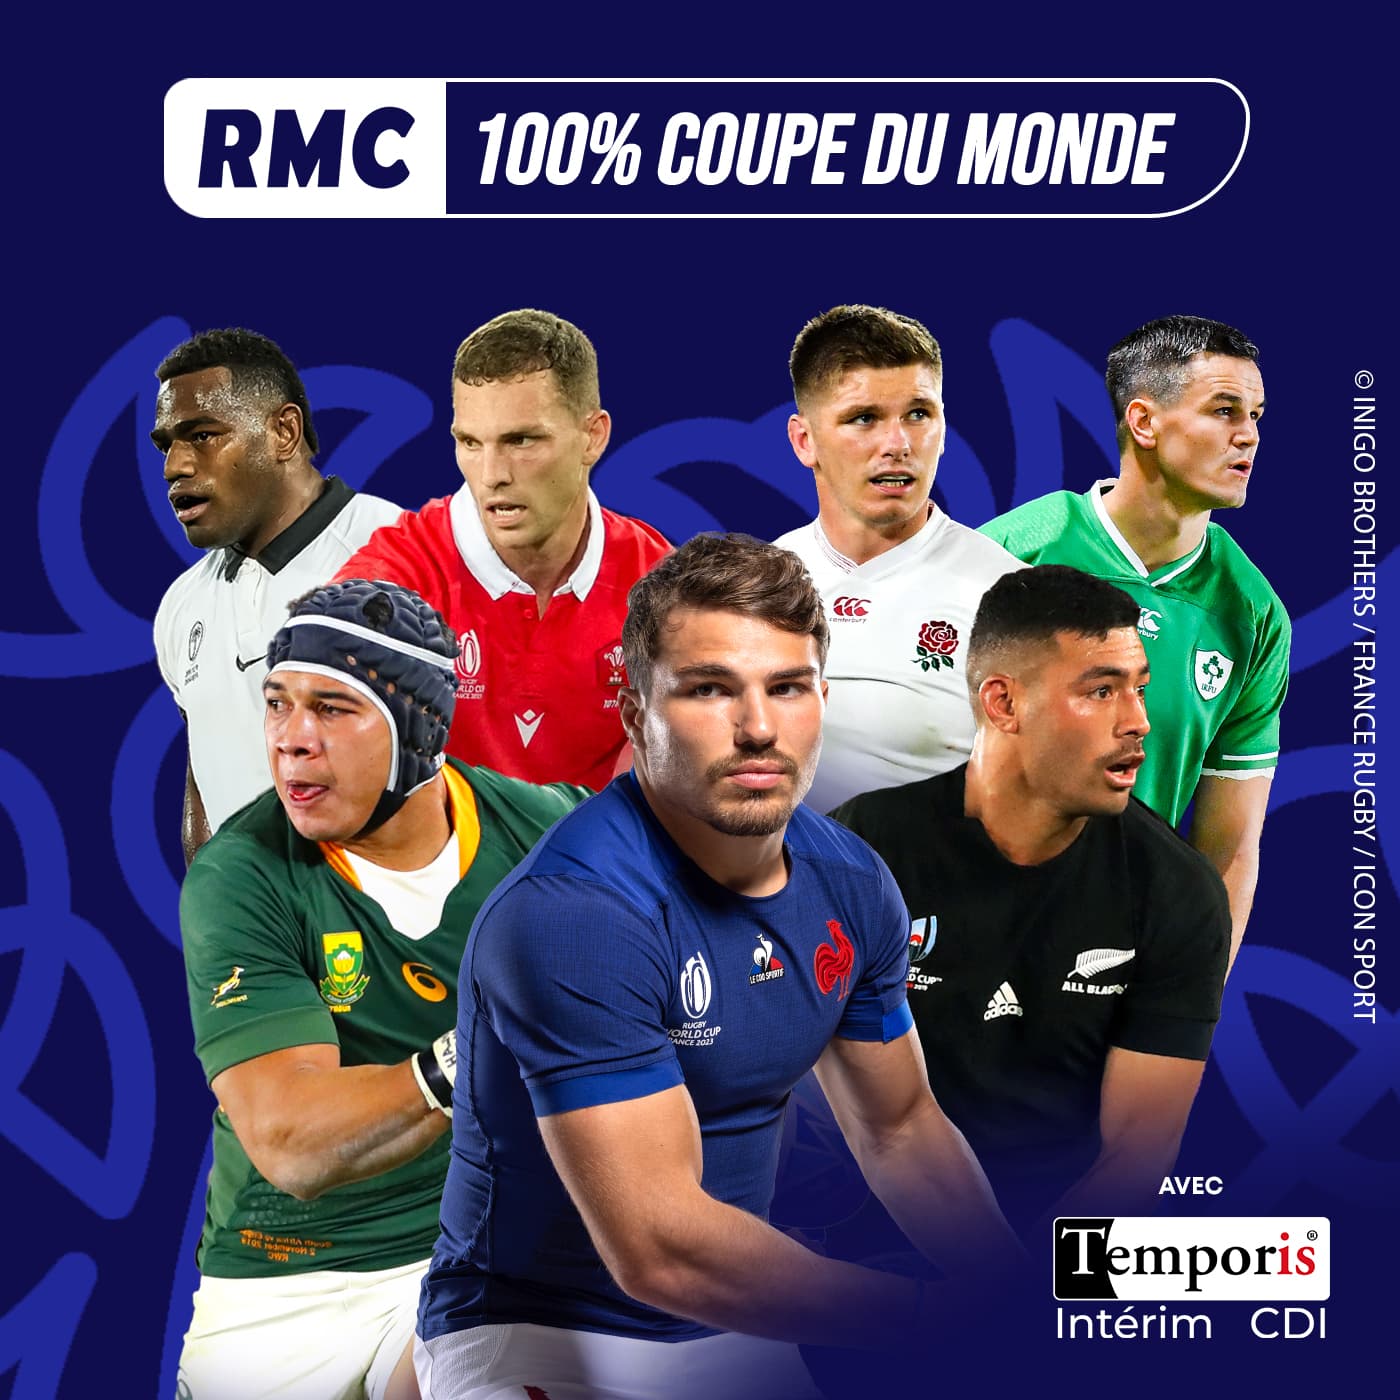 RMC 100% Coupe du Monde